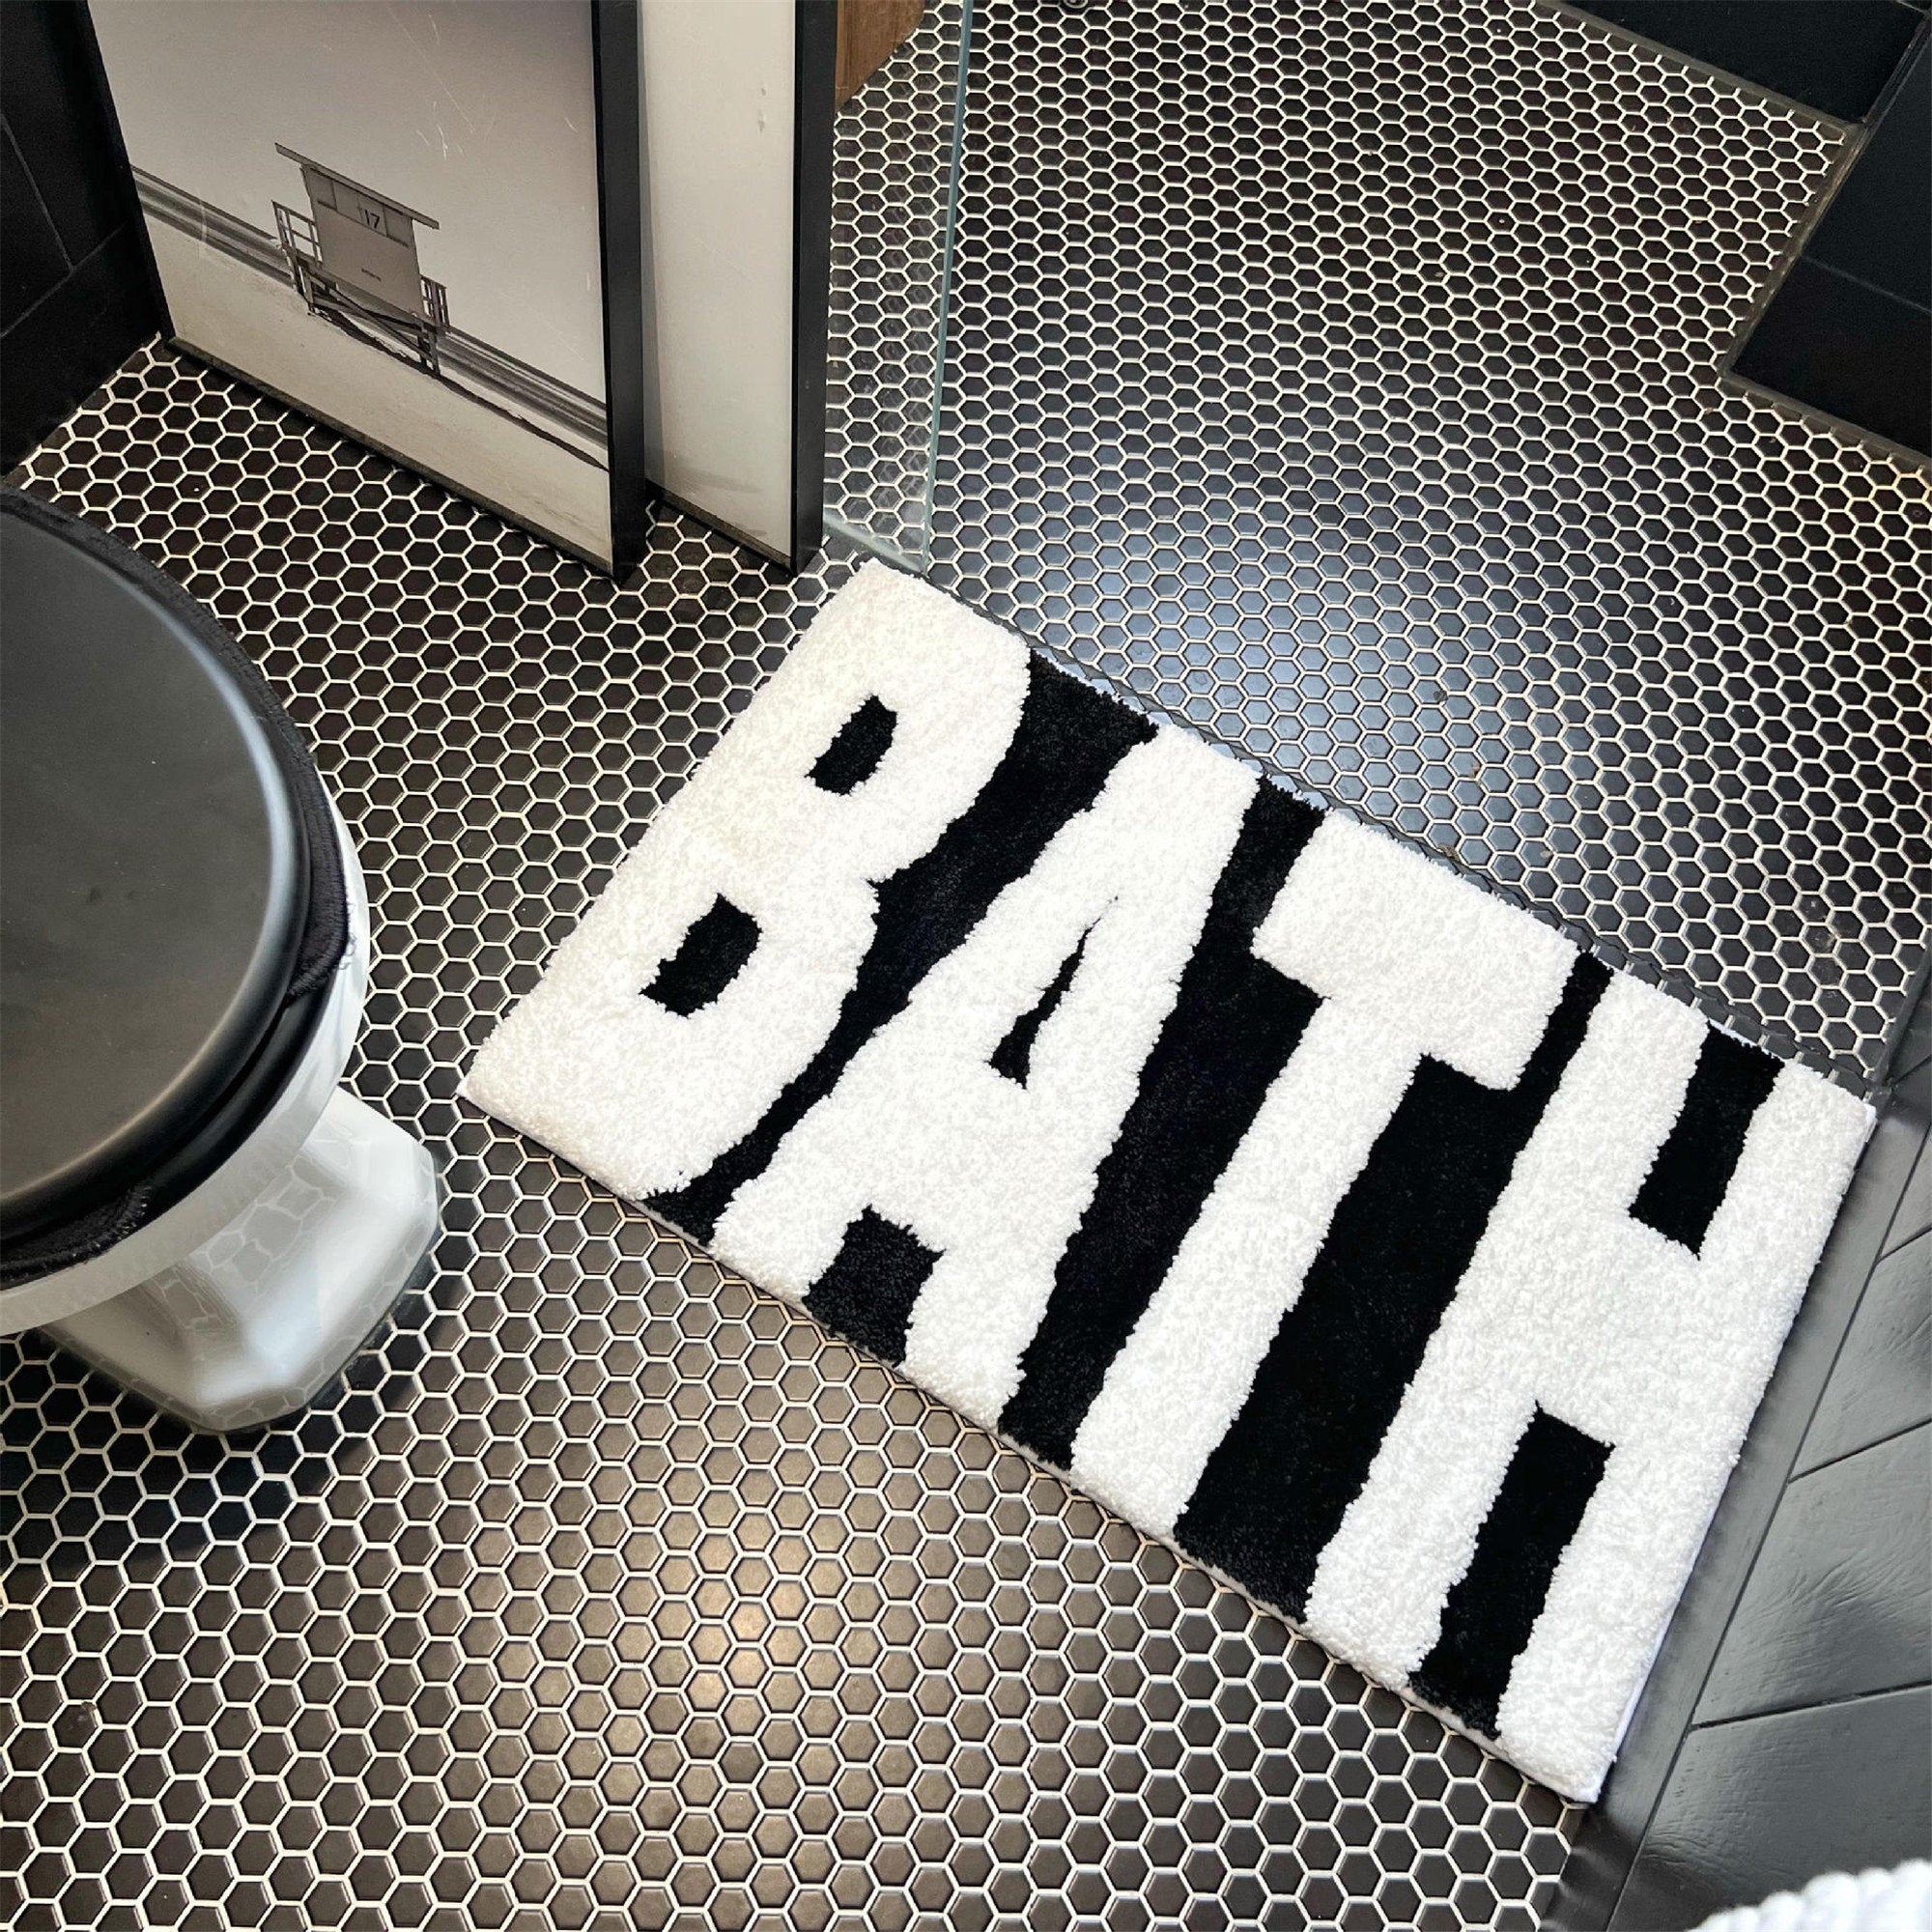 Bath Rug, Non-Slip Bath Mat, Cute Bath Mat, Funny Bath Rugs, Bath Floor Mat, Unique Home Decor, Modern Bathroom Decor, Housewarming Gifts